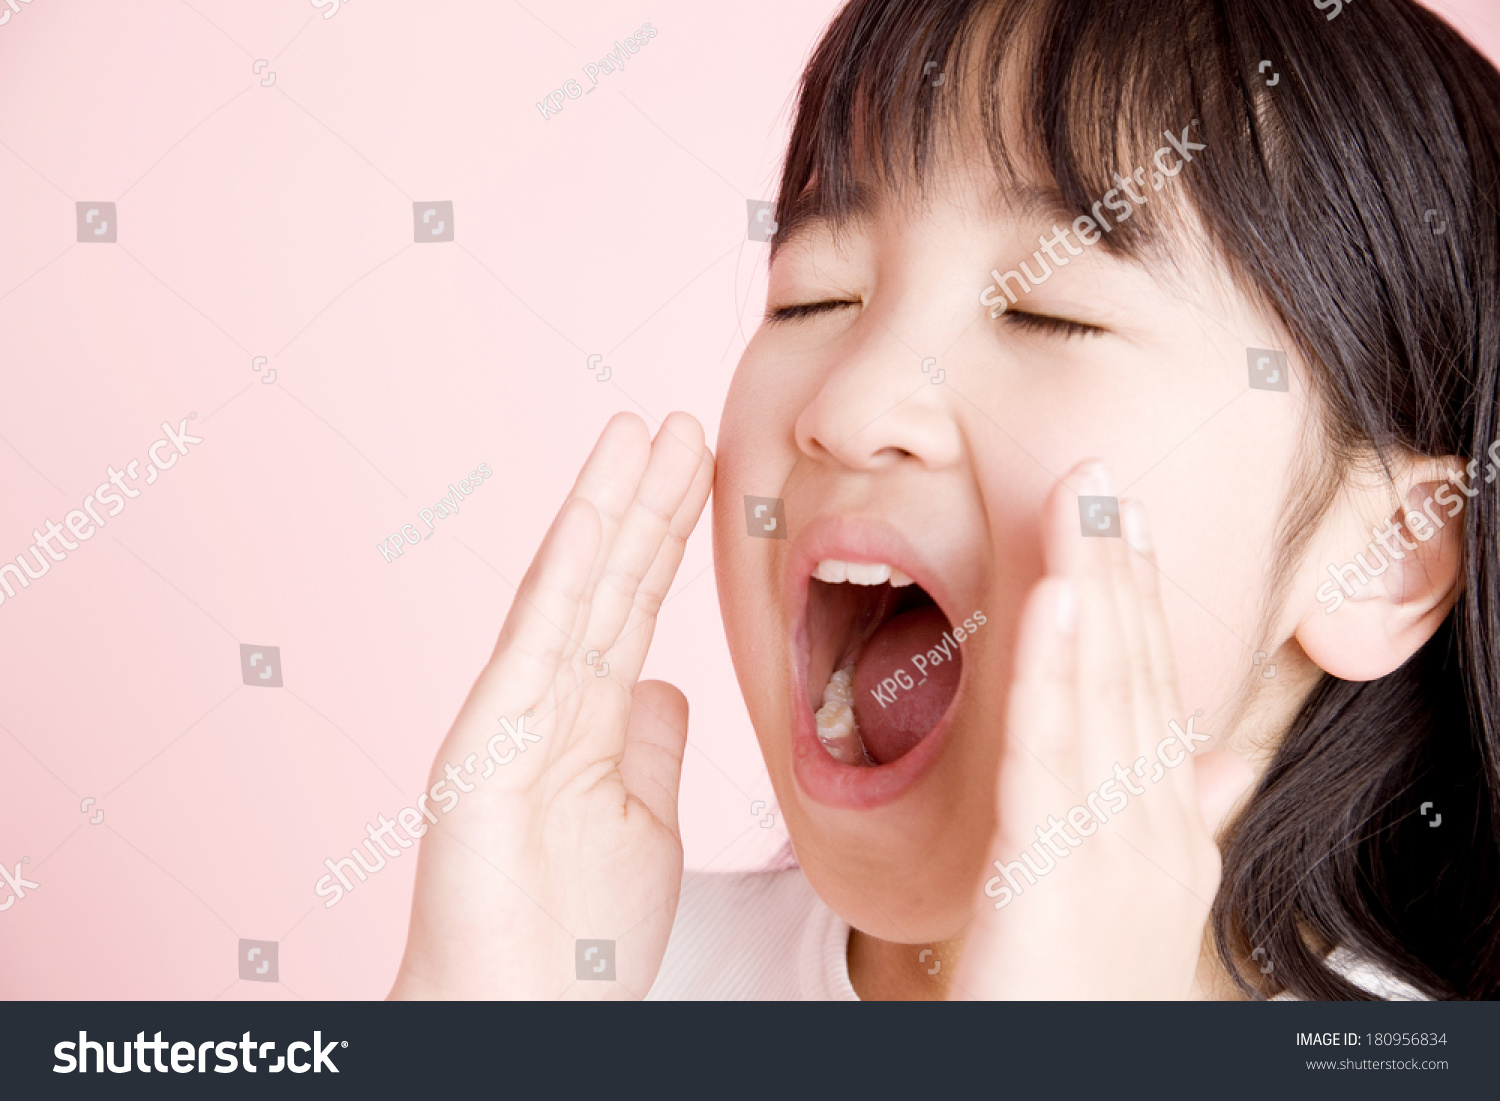 Japanese Children Screaming Stock Photo 180956834 | Shutterstock